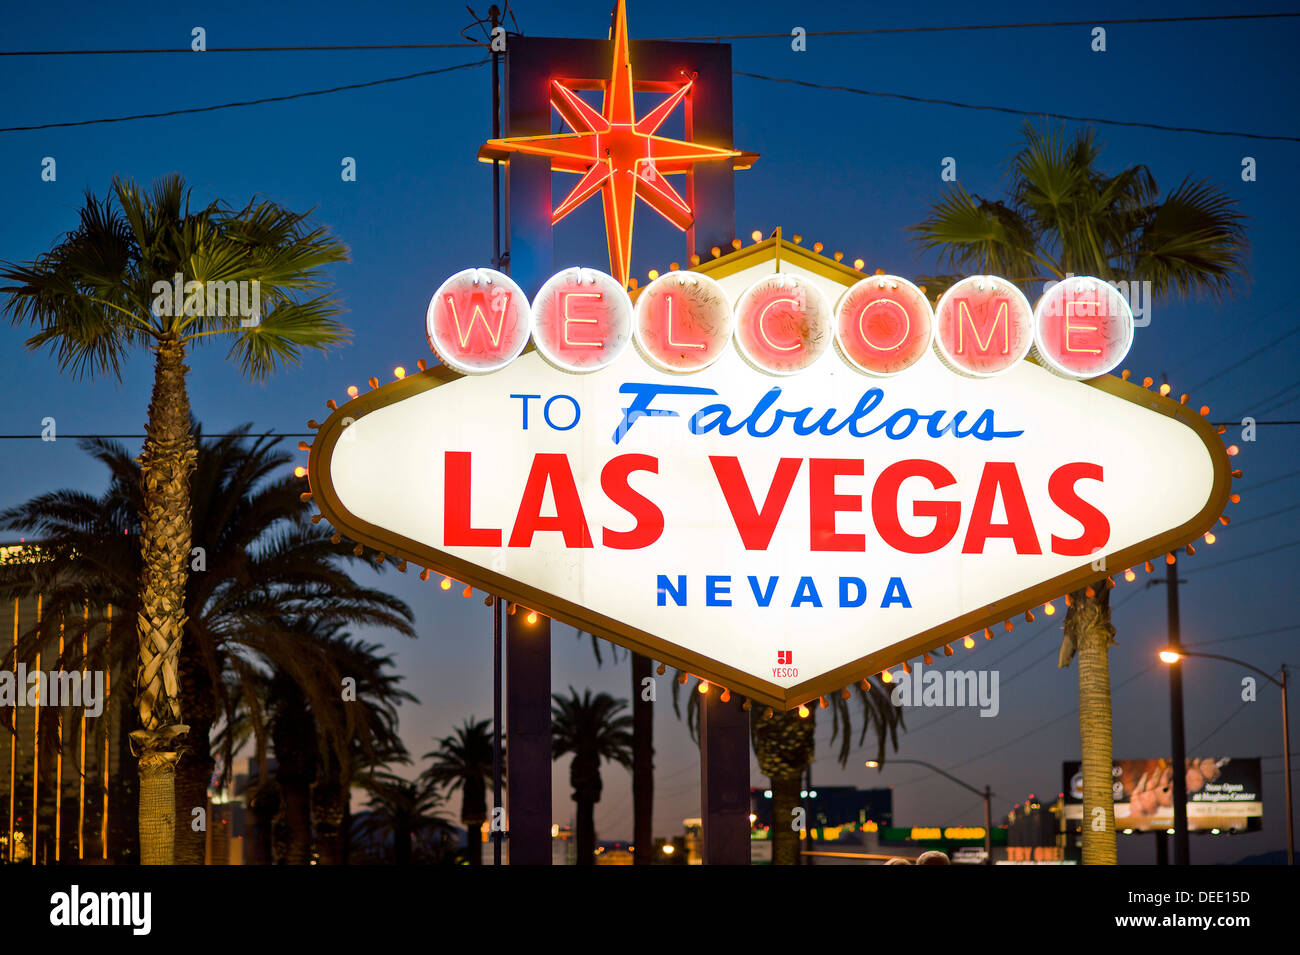 Las Vegas Sign at night, Nevada, États-Unis d'Amérique, Amérique du Nord Banque D'Images